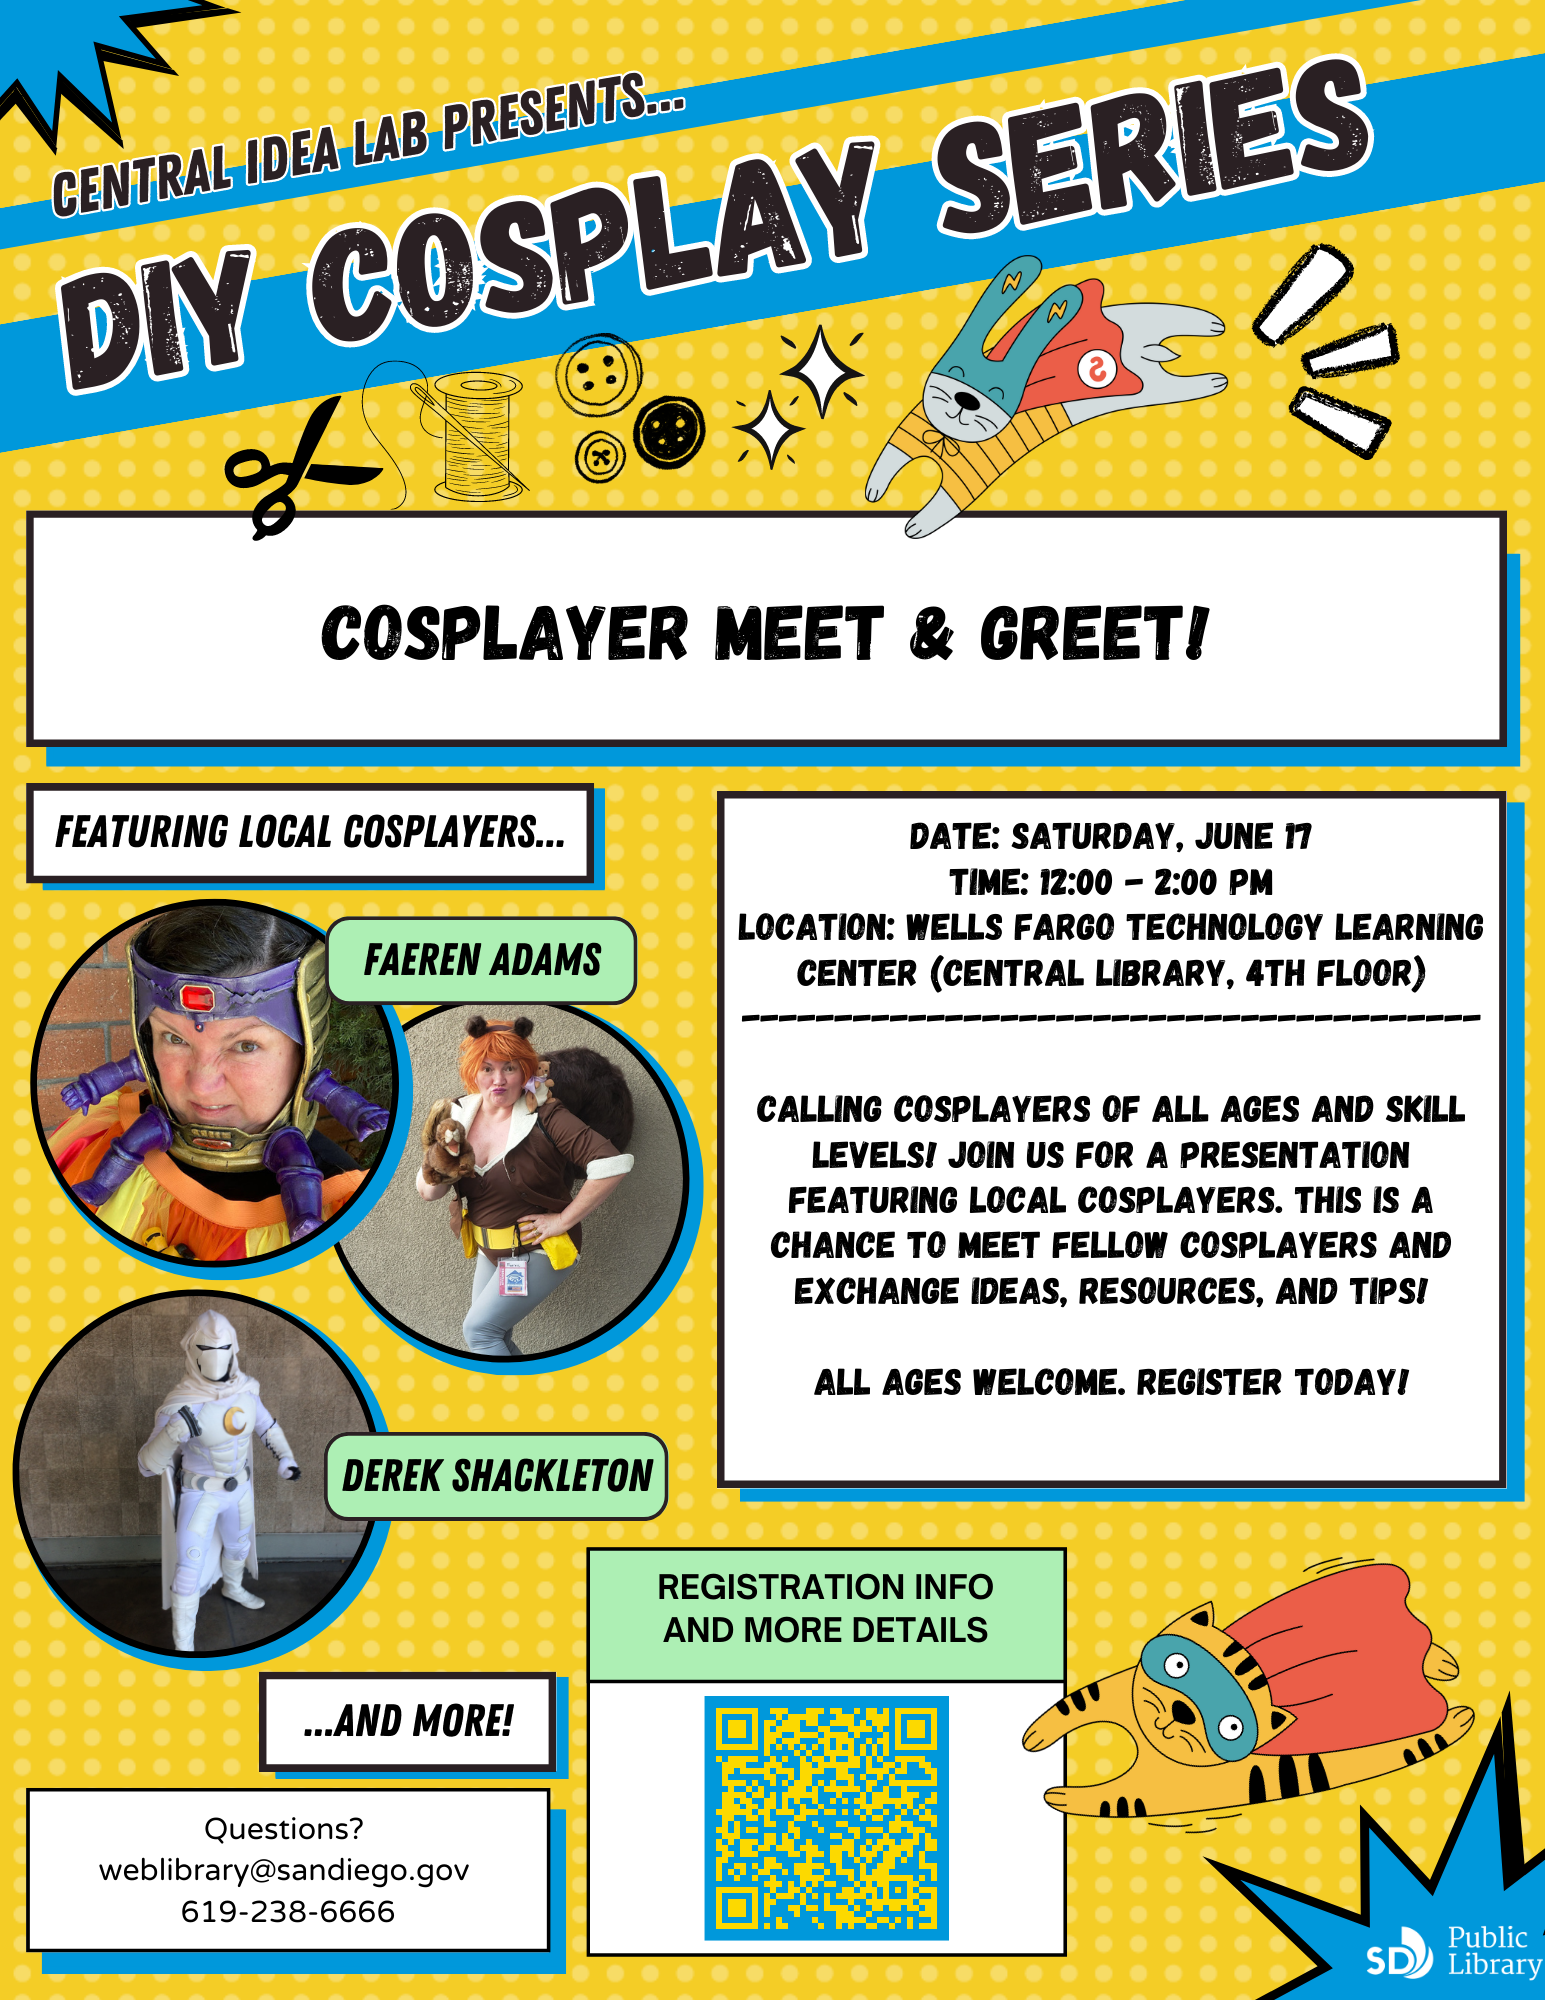 DIY Cosplay Series: Cosplayer meet & greet